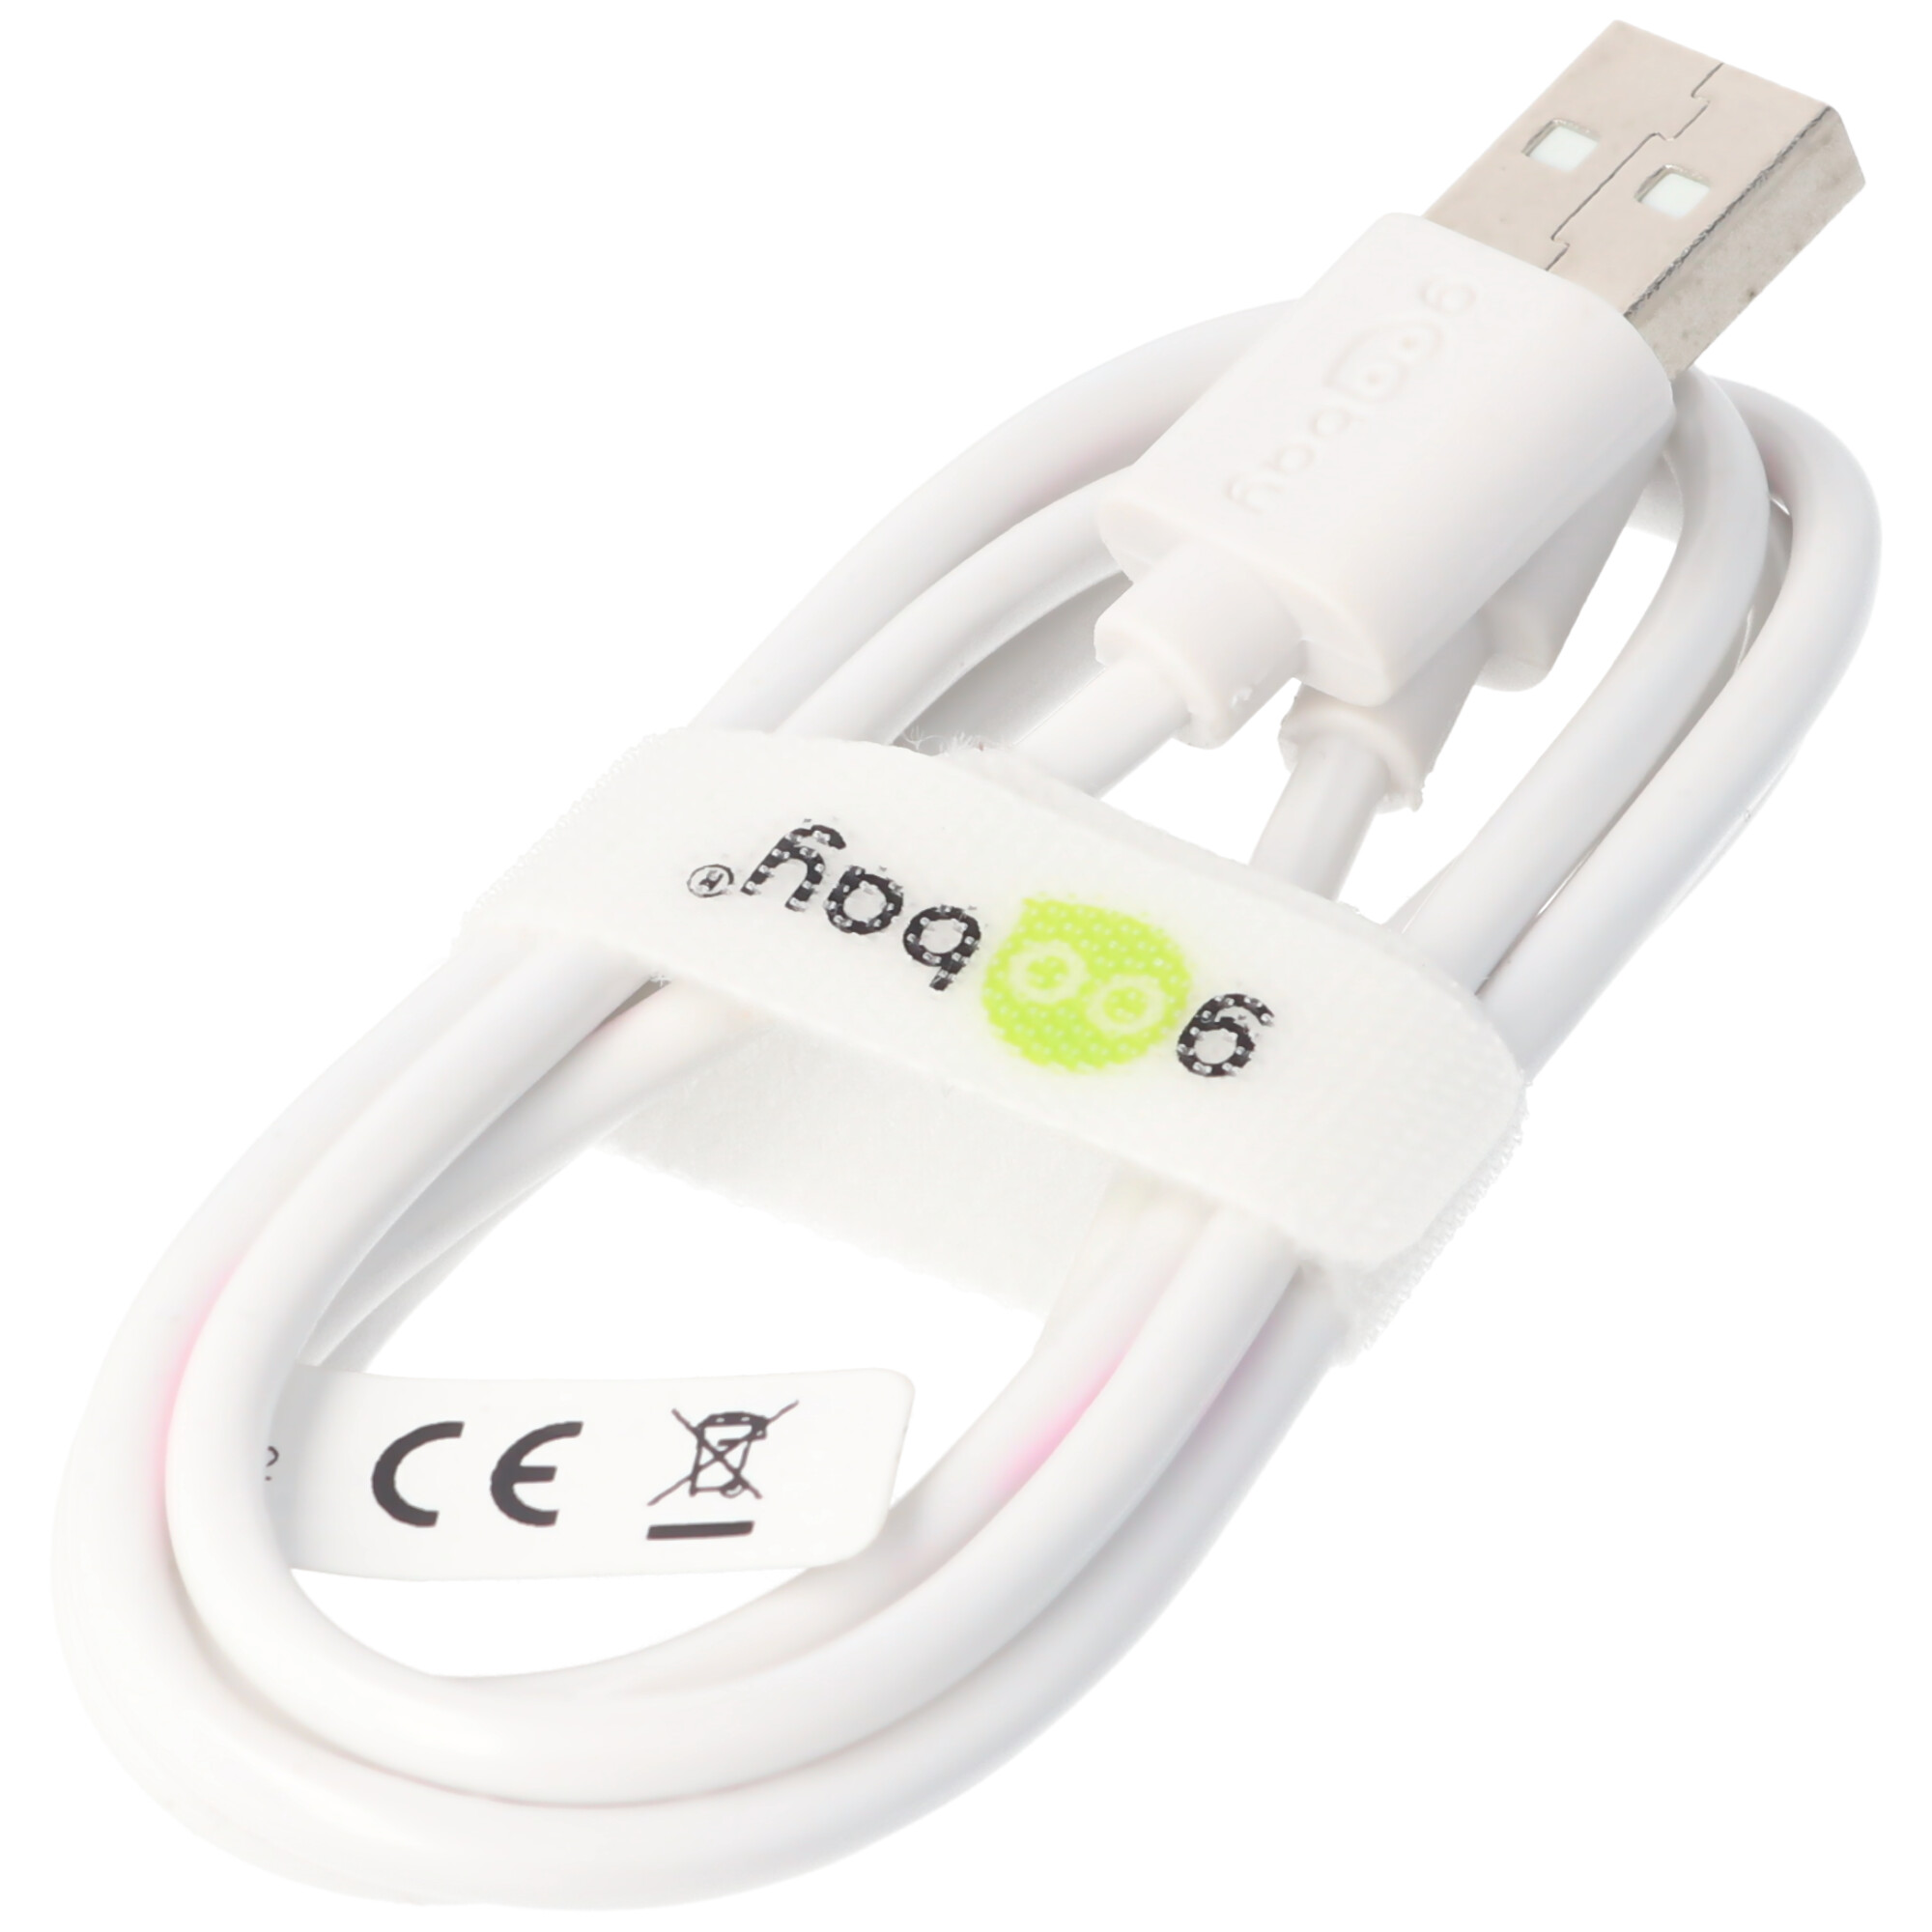 USB-C Lade- und Synchronisationskabel für alle Geräte mit USB-C Anschluss, weiß